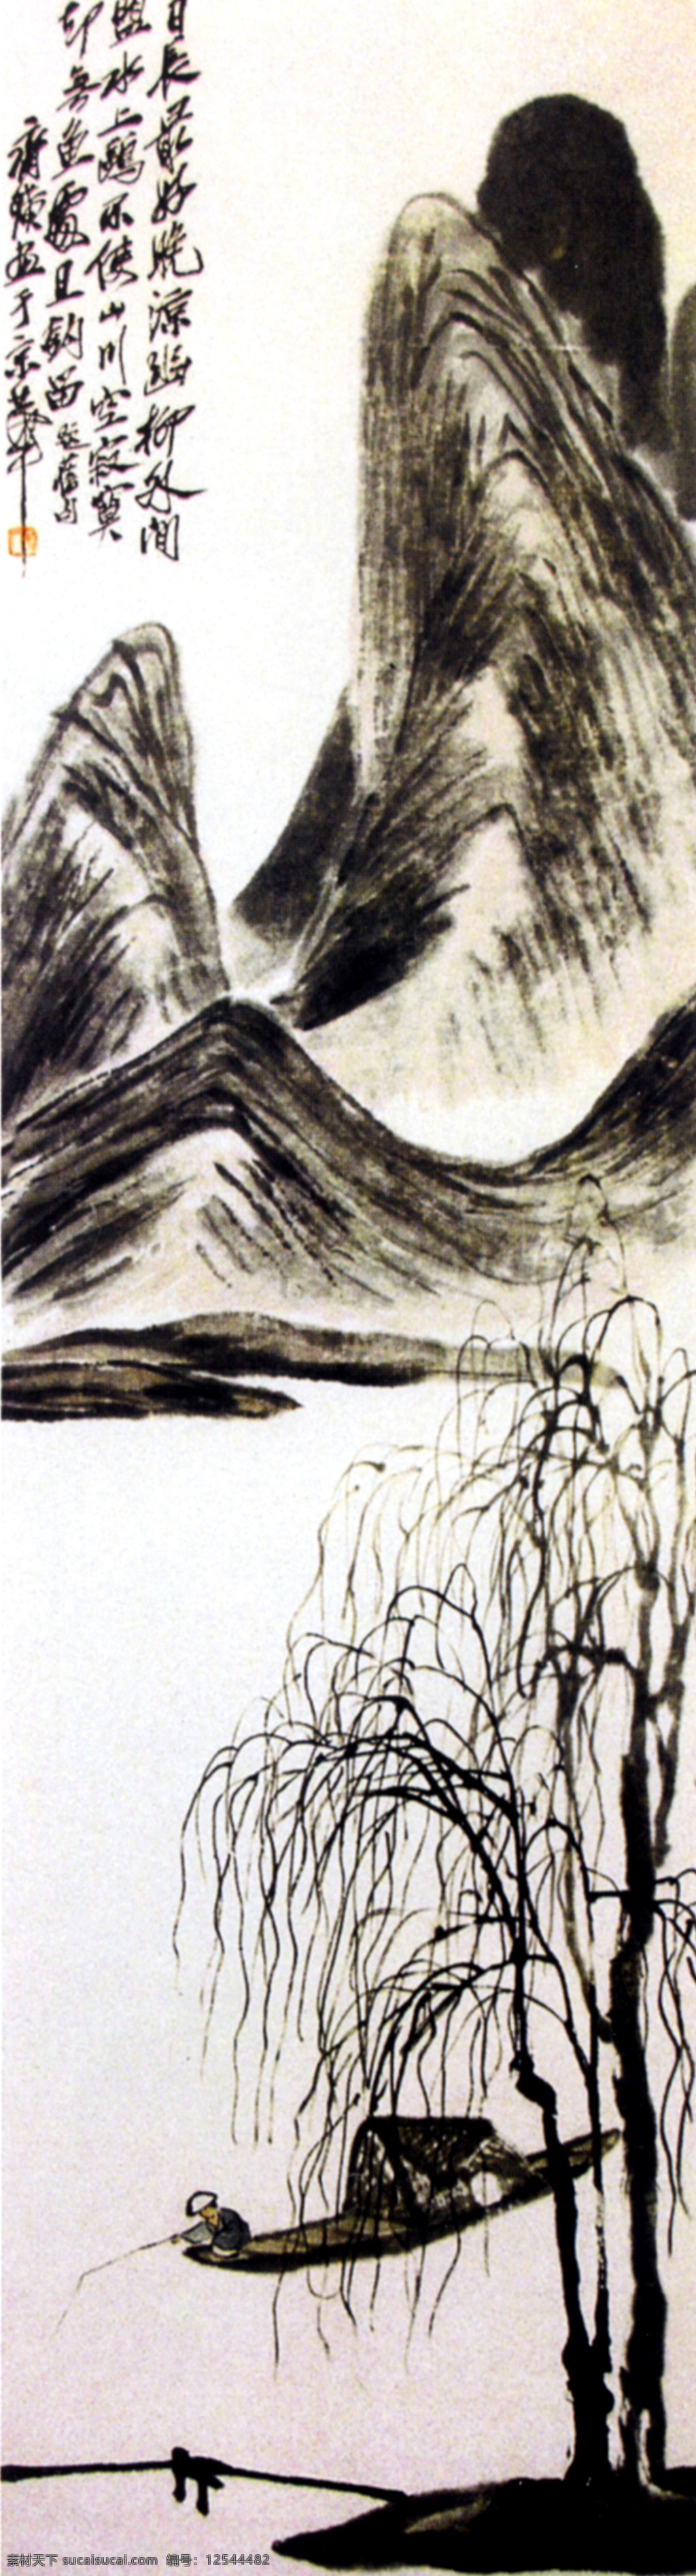 装饰画 丹青 江山多娇 江山如此多娇 中国画 江山如画图 家居装饰素材 山水风景画